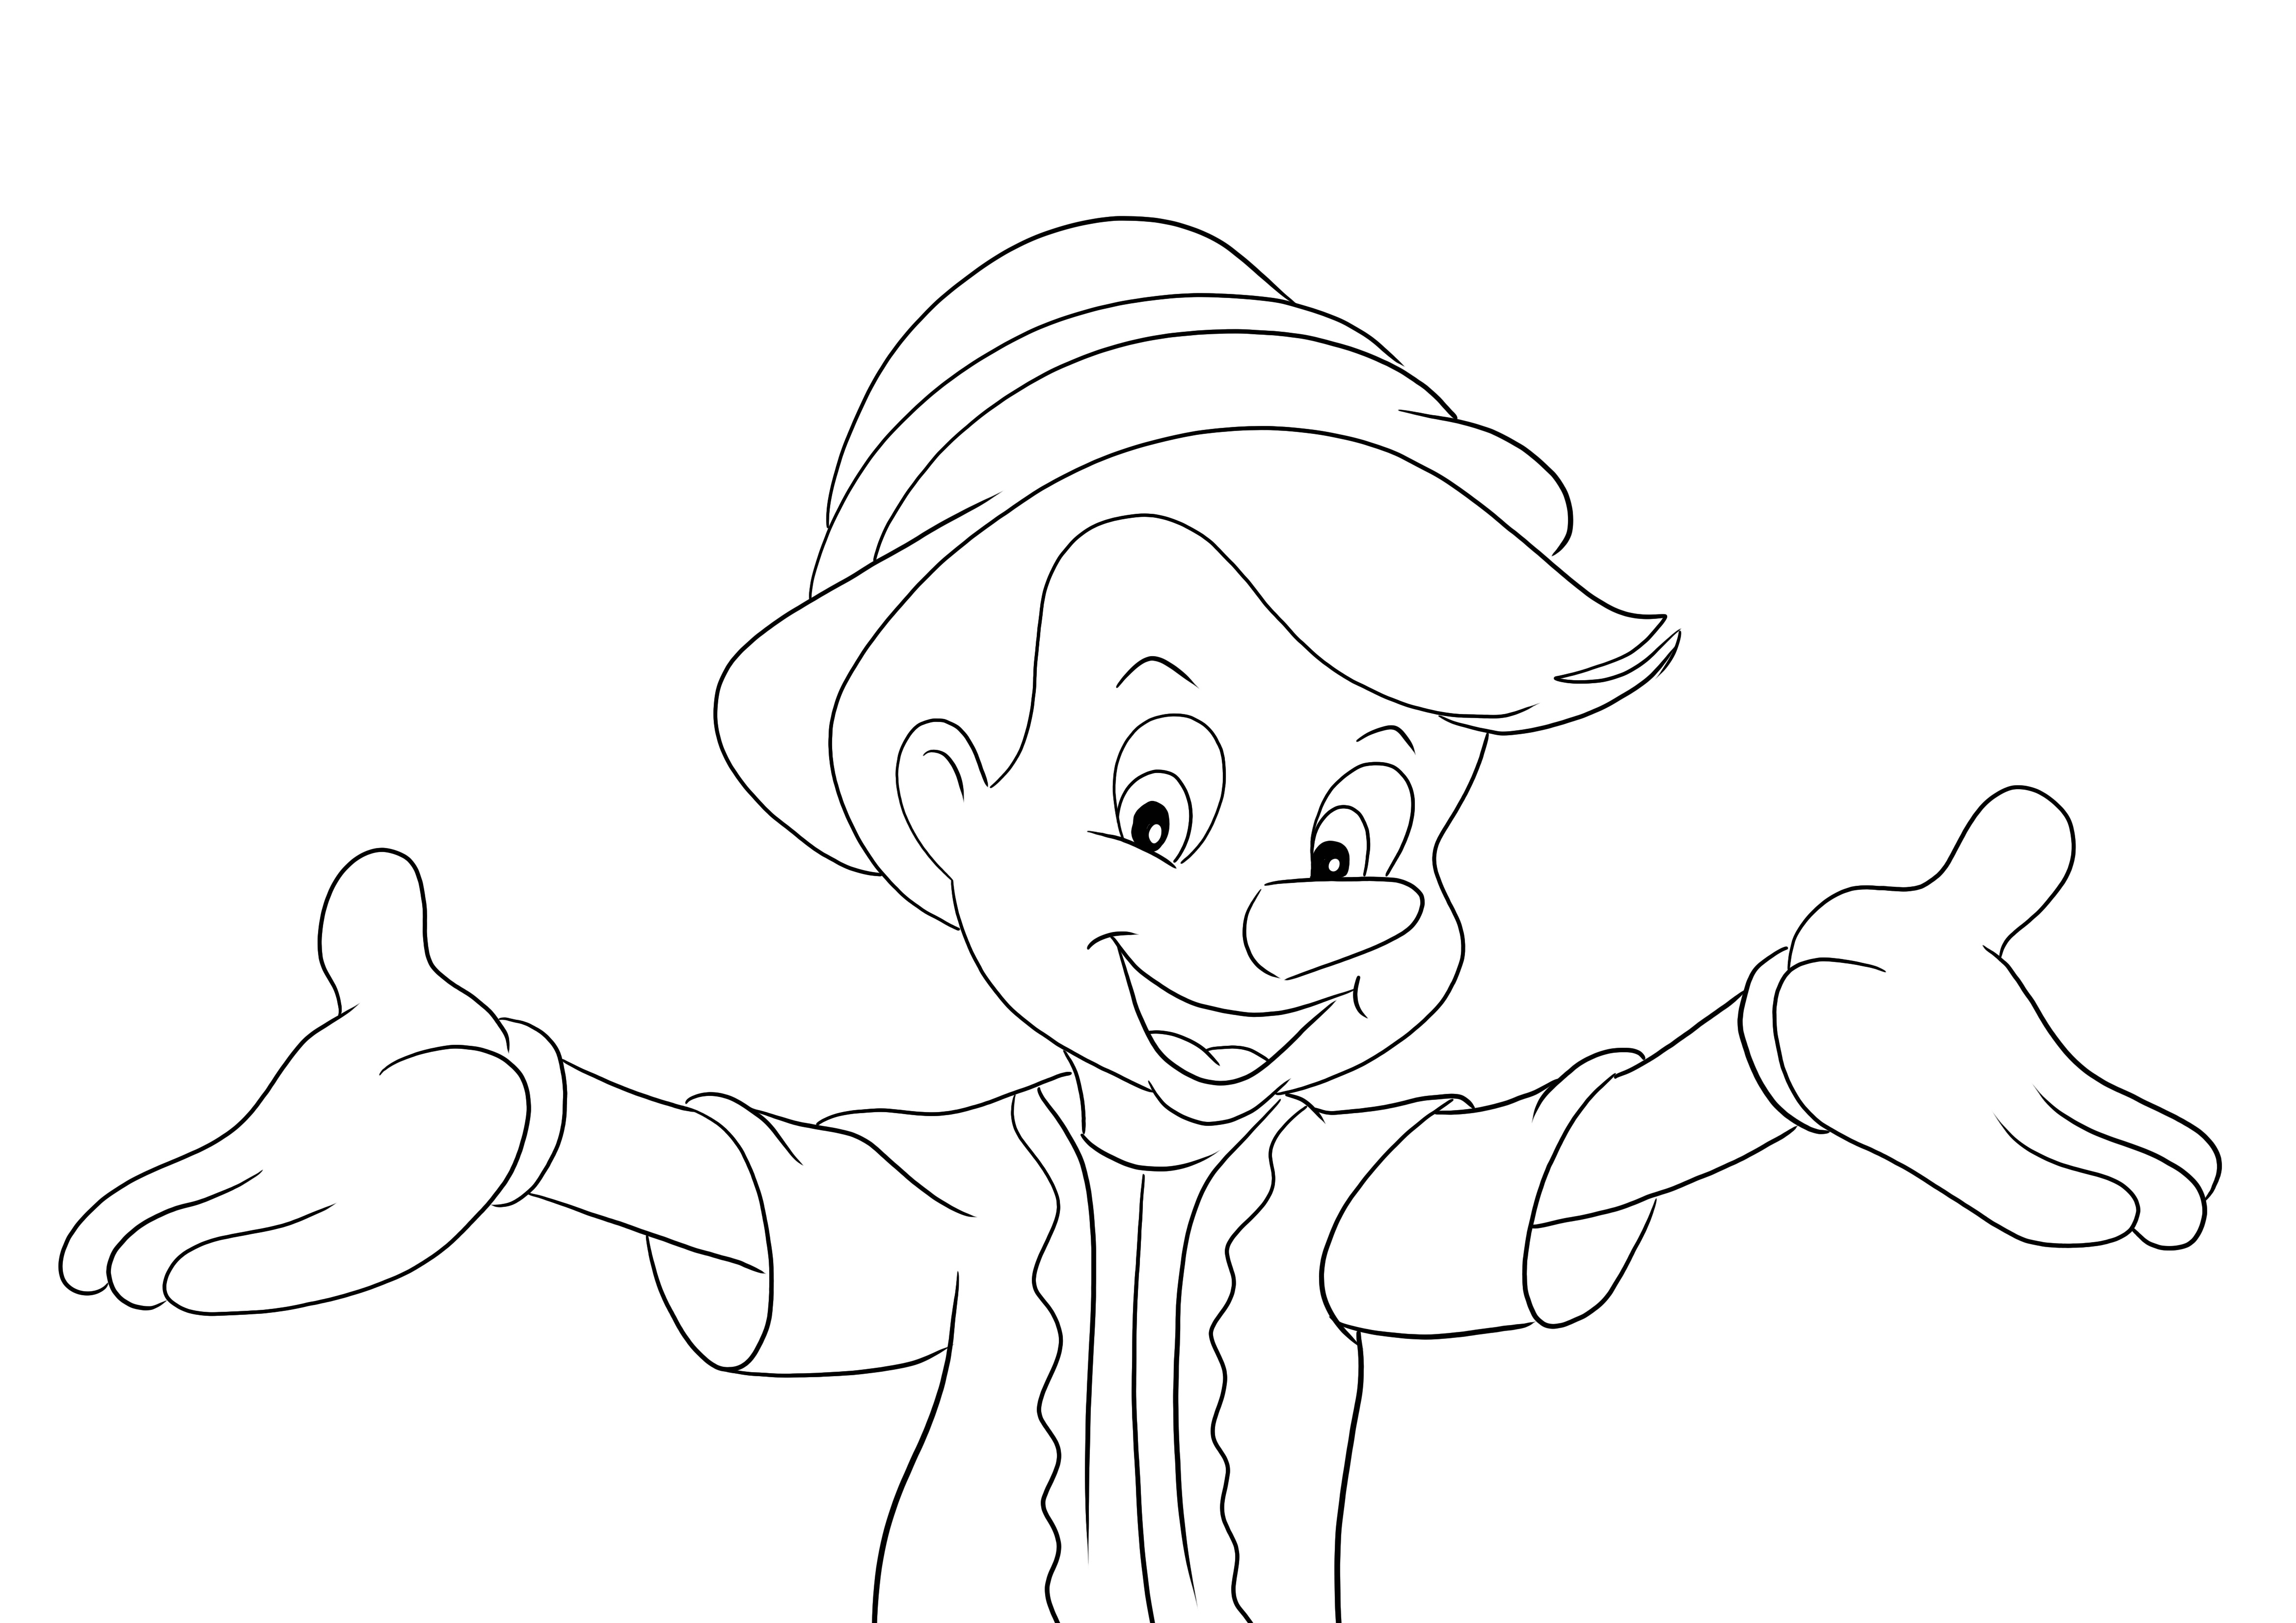 Pinocchio și poză deschisă de tipărit și de colorat hands-free pentru copii